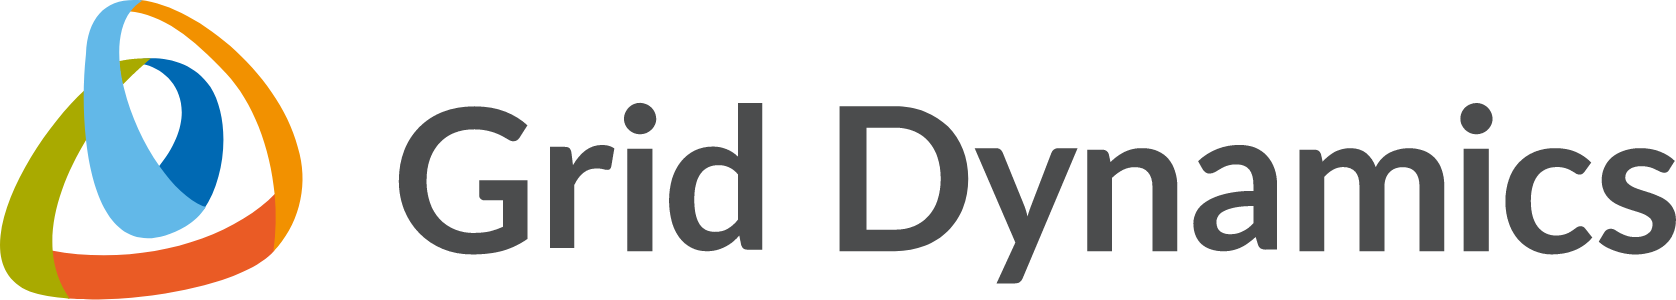 Logo Grid Dynamics